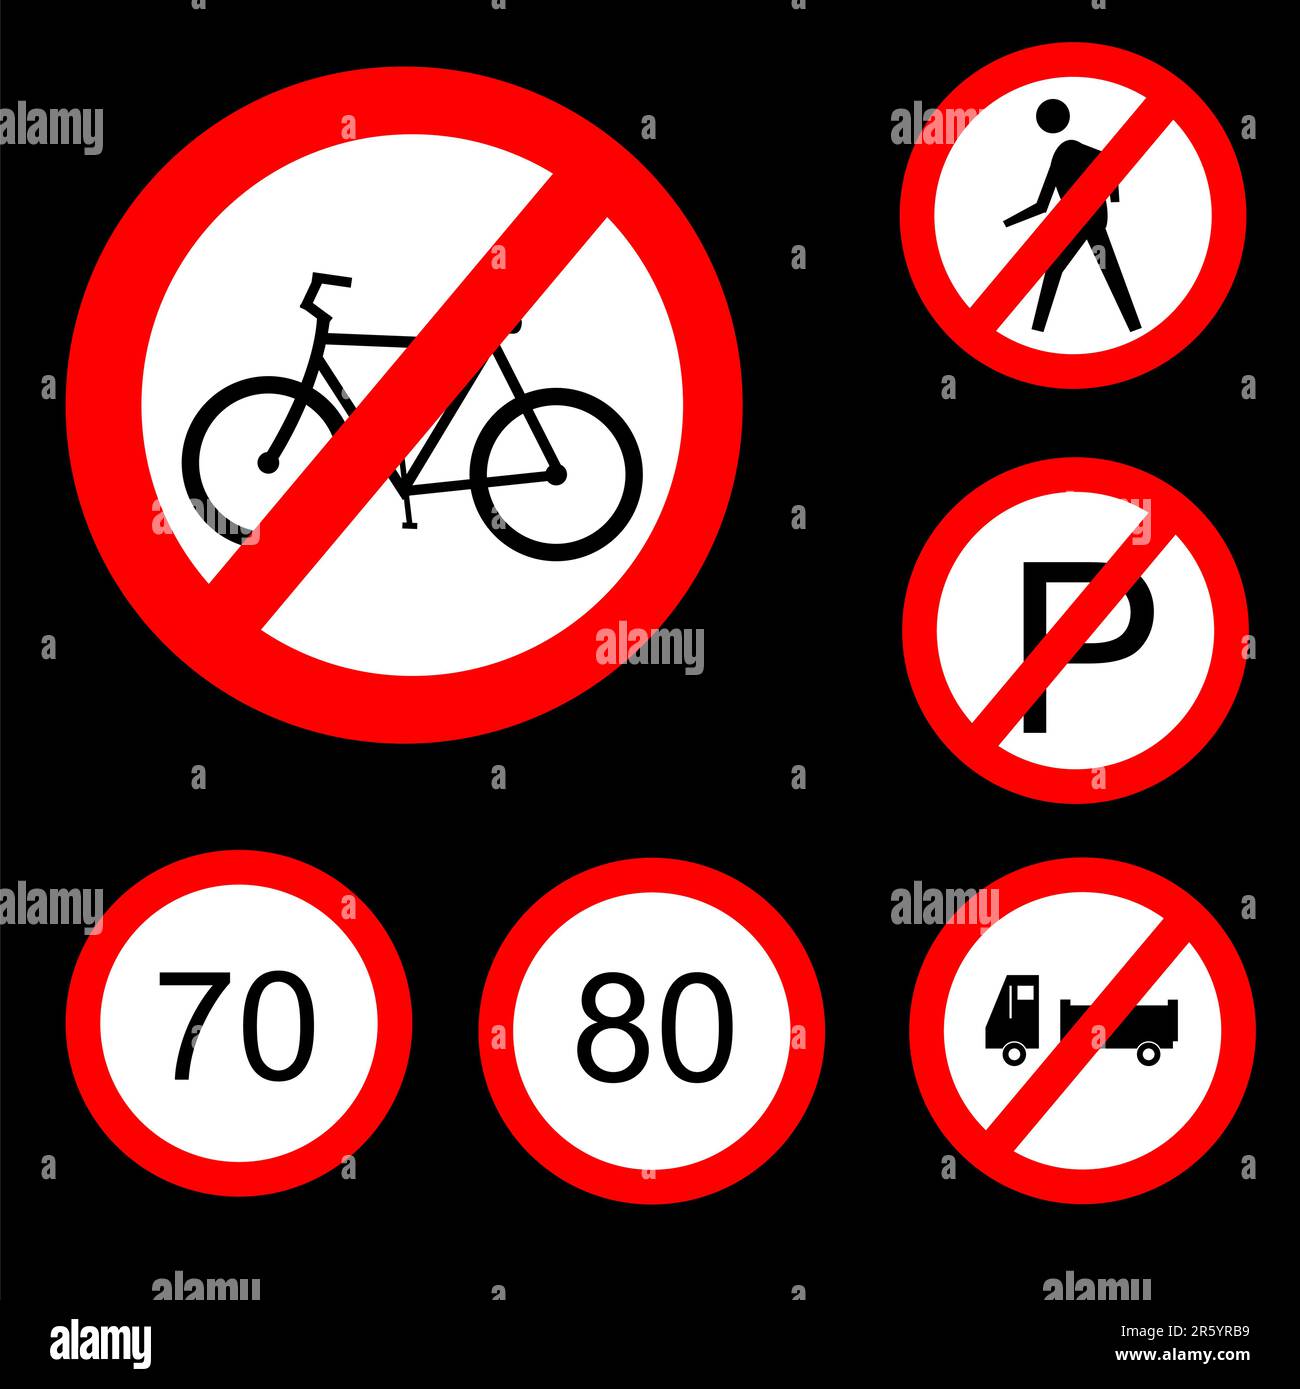 Illustrazione vettoriale di sei segnali stradali proibitivi rotondi set 3 Illustrazione Vettoriale